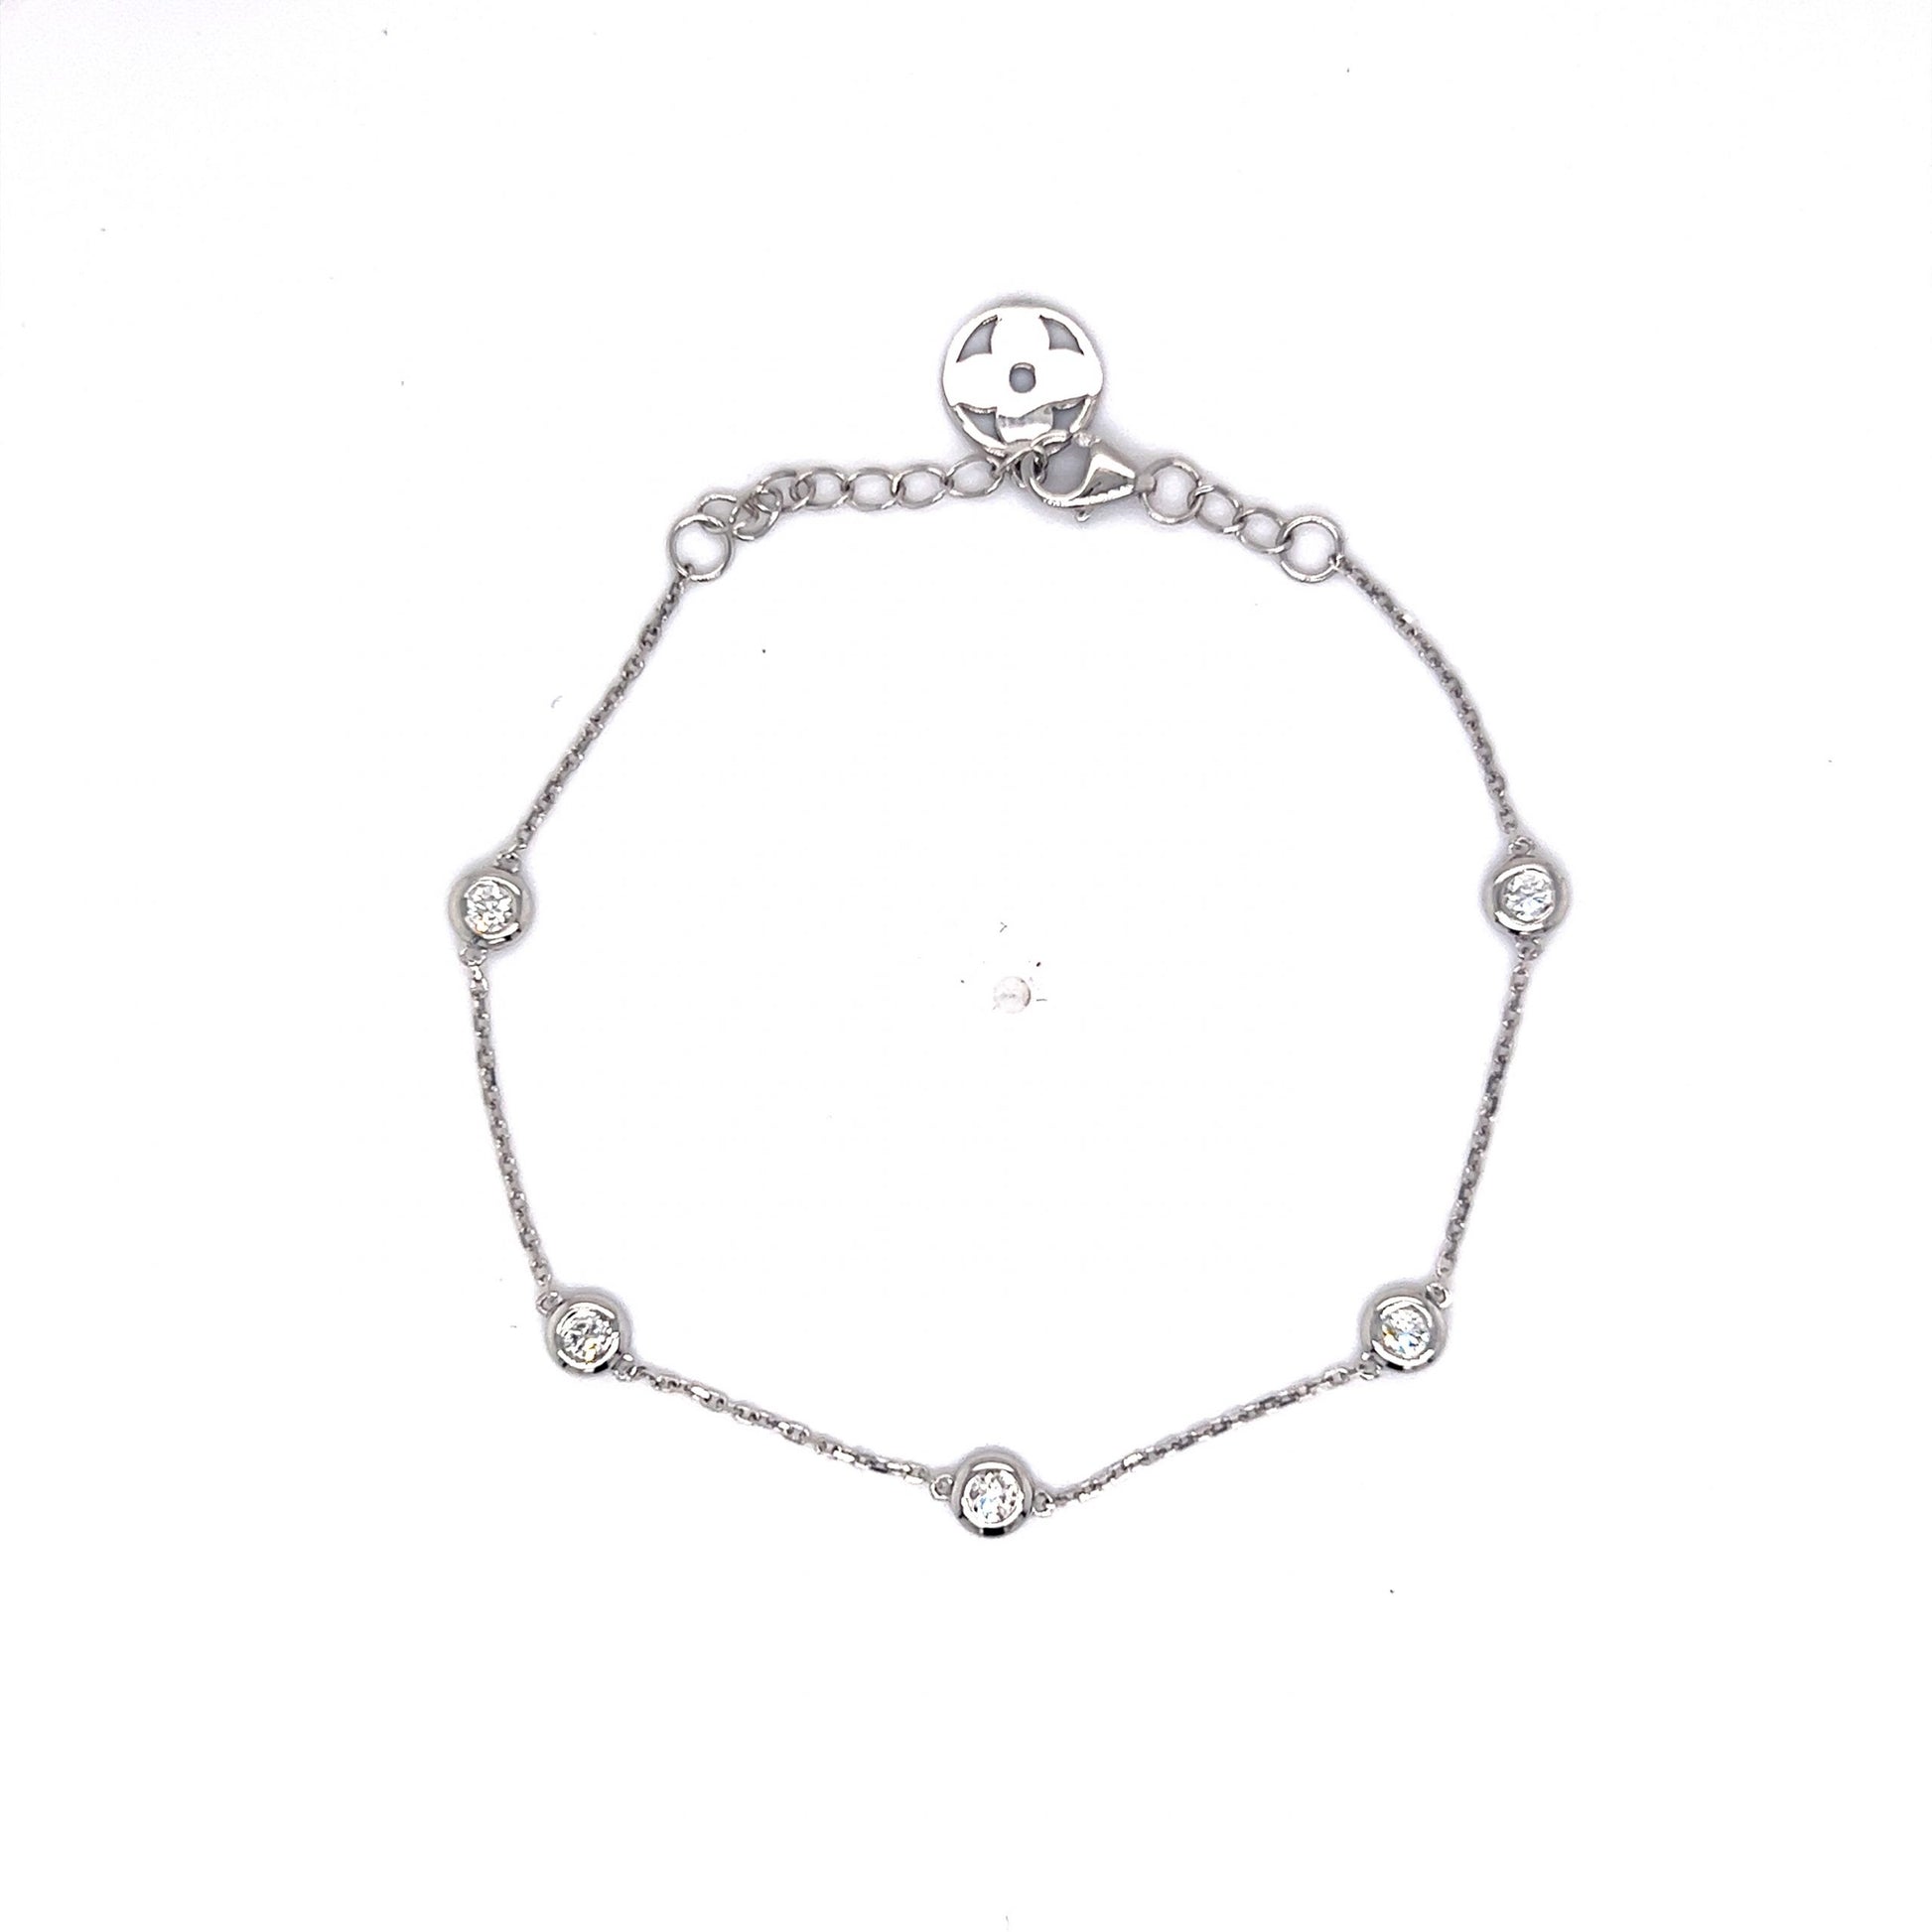 .20 Everyday Bezel Set Diamond Chain Bracelet in 14k White Gold